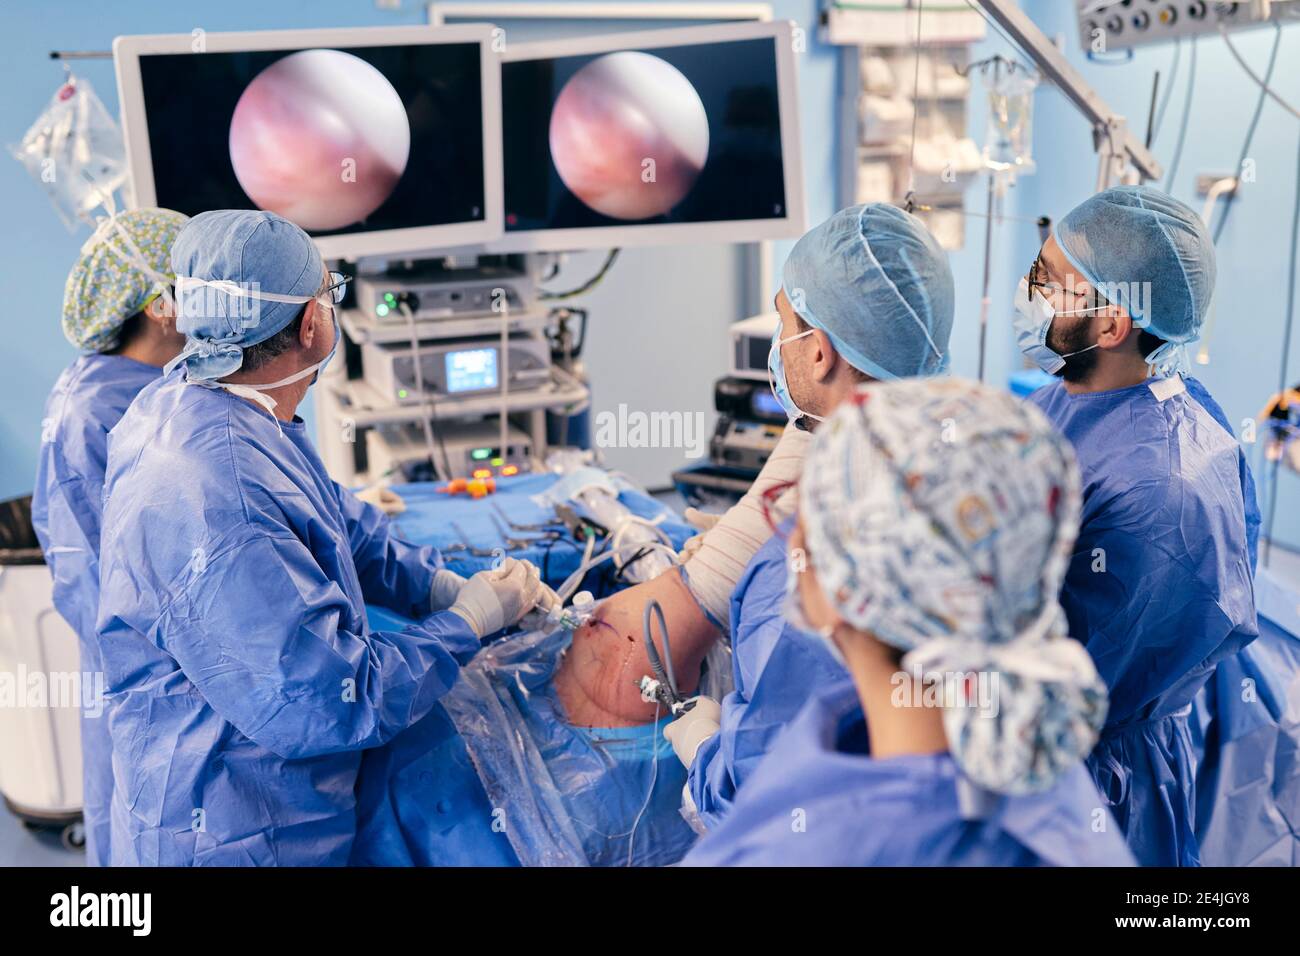 Professionnels qui surveillent la chirurgie sur un dispositif de surveillance lorsqu'ils sont en fonctionnement COVID-19 Banque D'Images